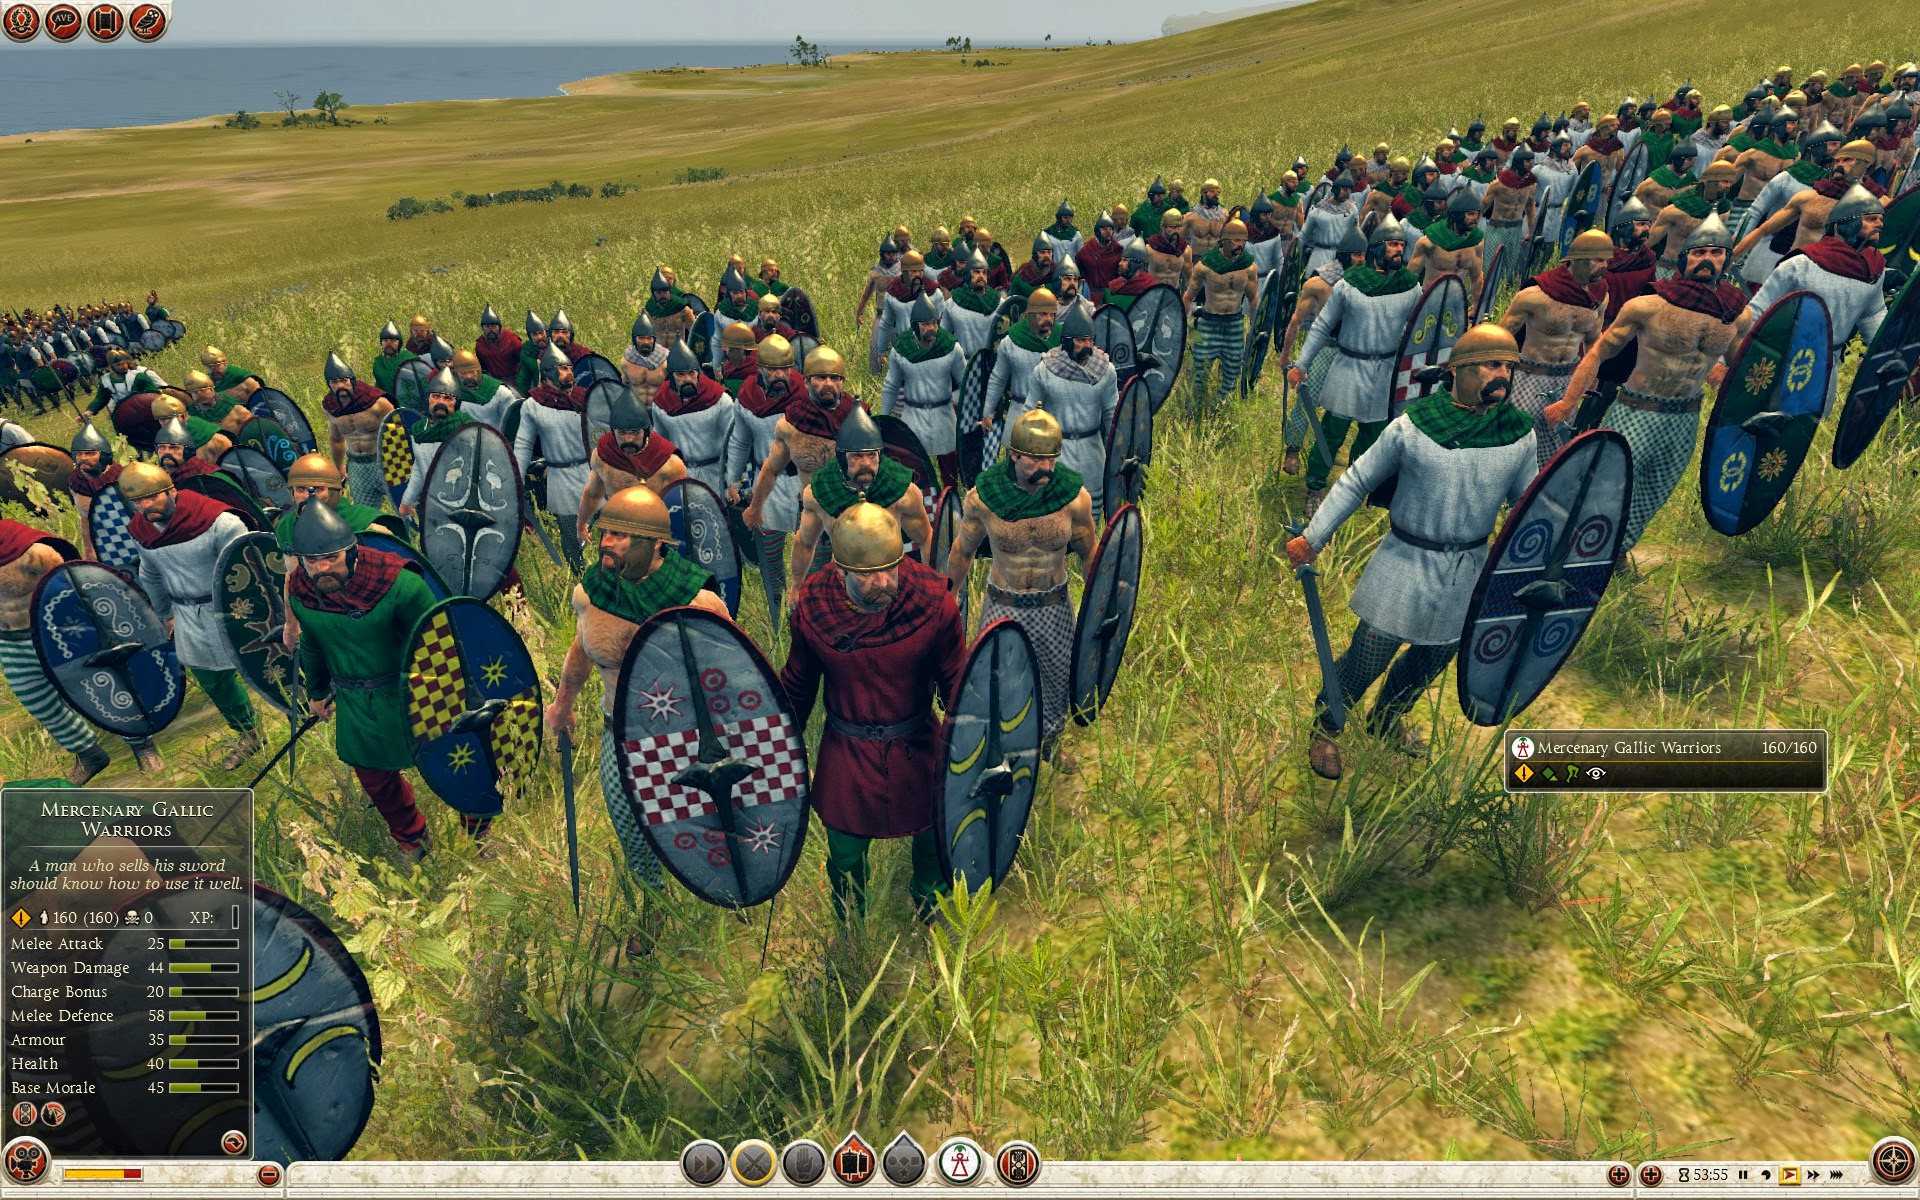 Mercenary Gallic Warriors